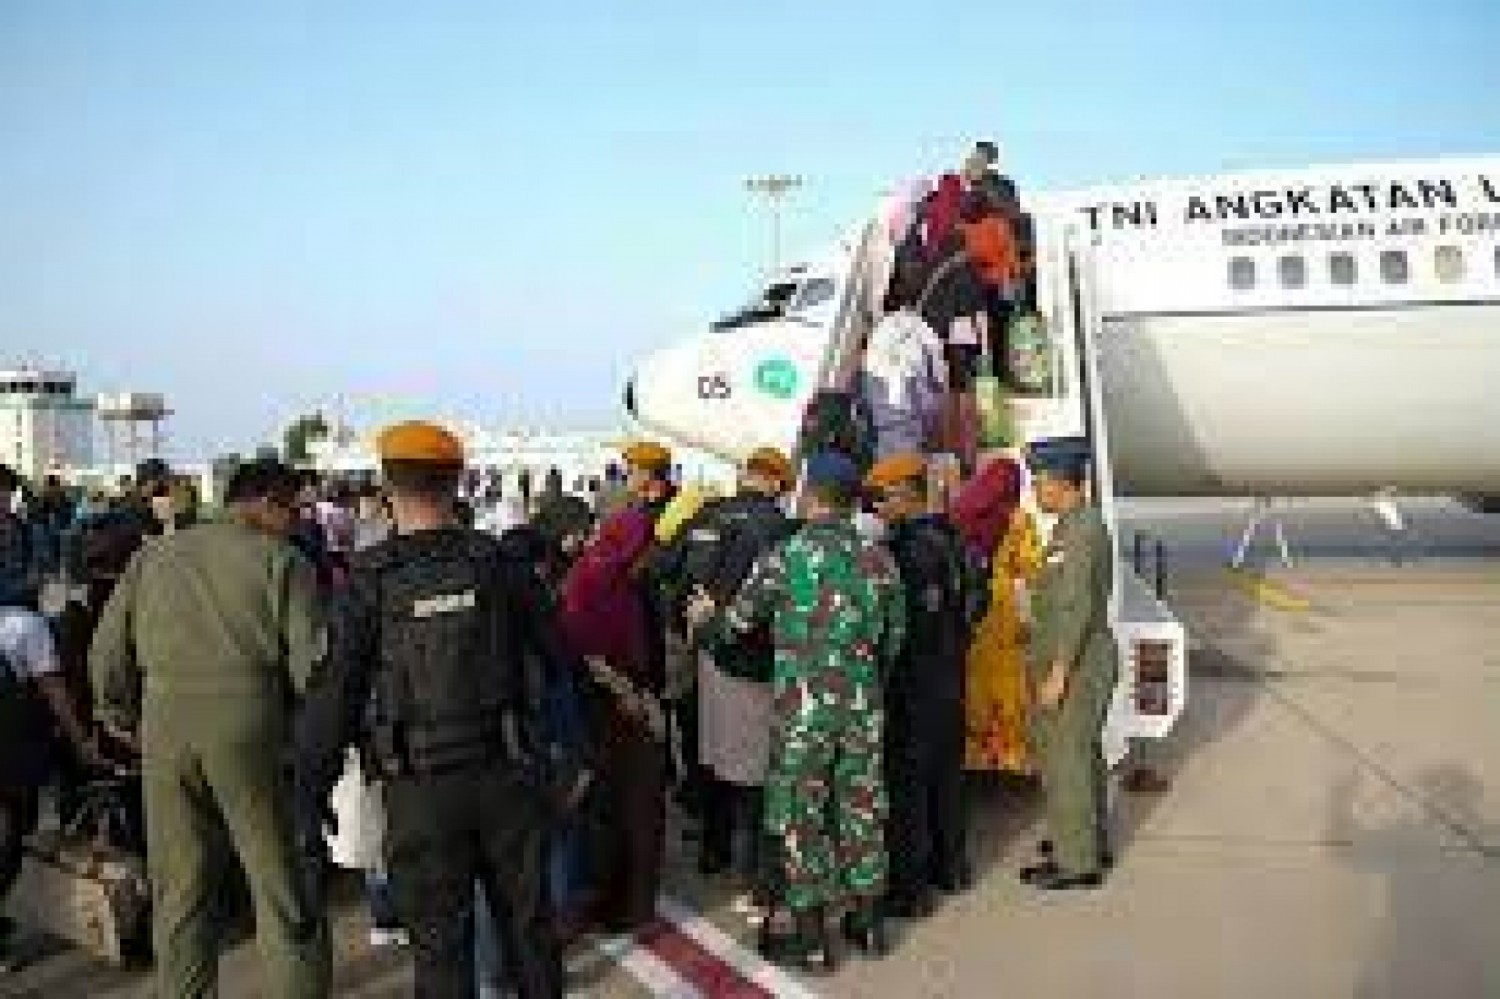 Soudan-Tchad : N'Djamena affrète deux avions pour le rapatriement de 221 ressortissants